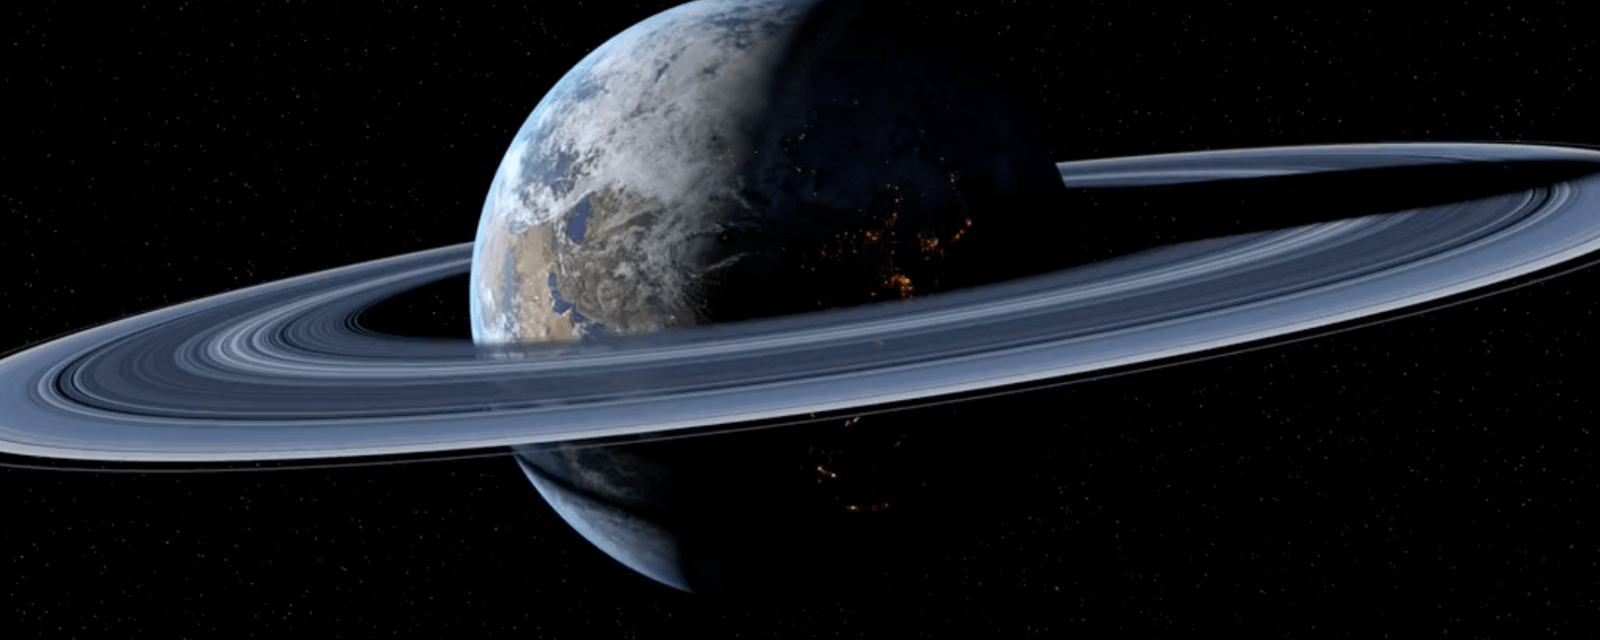 Voici à quoi ressemblerait notre vie si la Terre avait des anneaux comme Saturne!